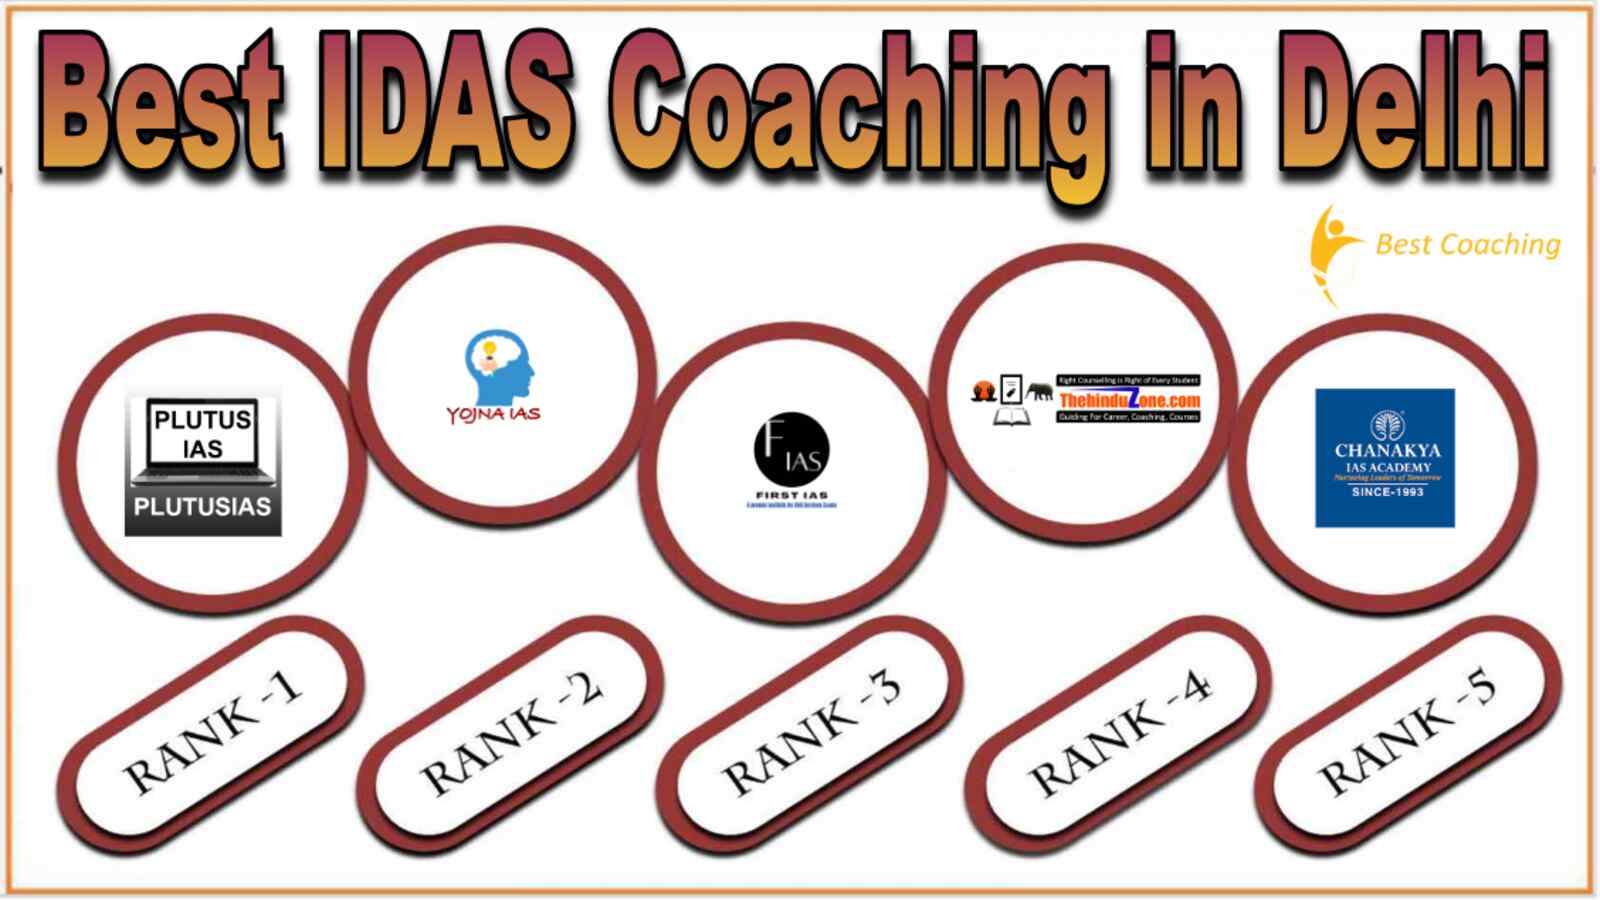 Best IDAS Coaching in Delhi